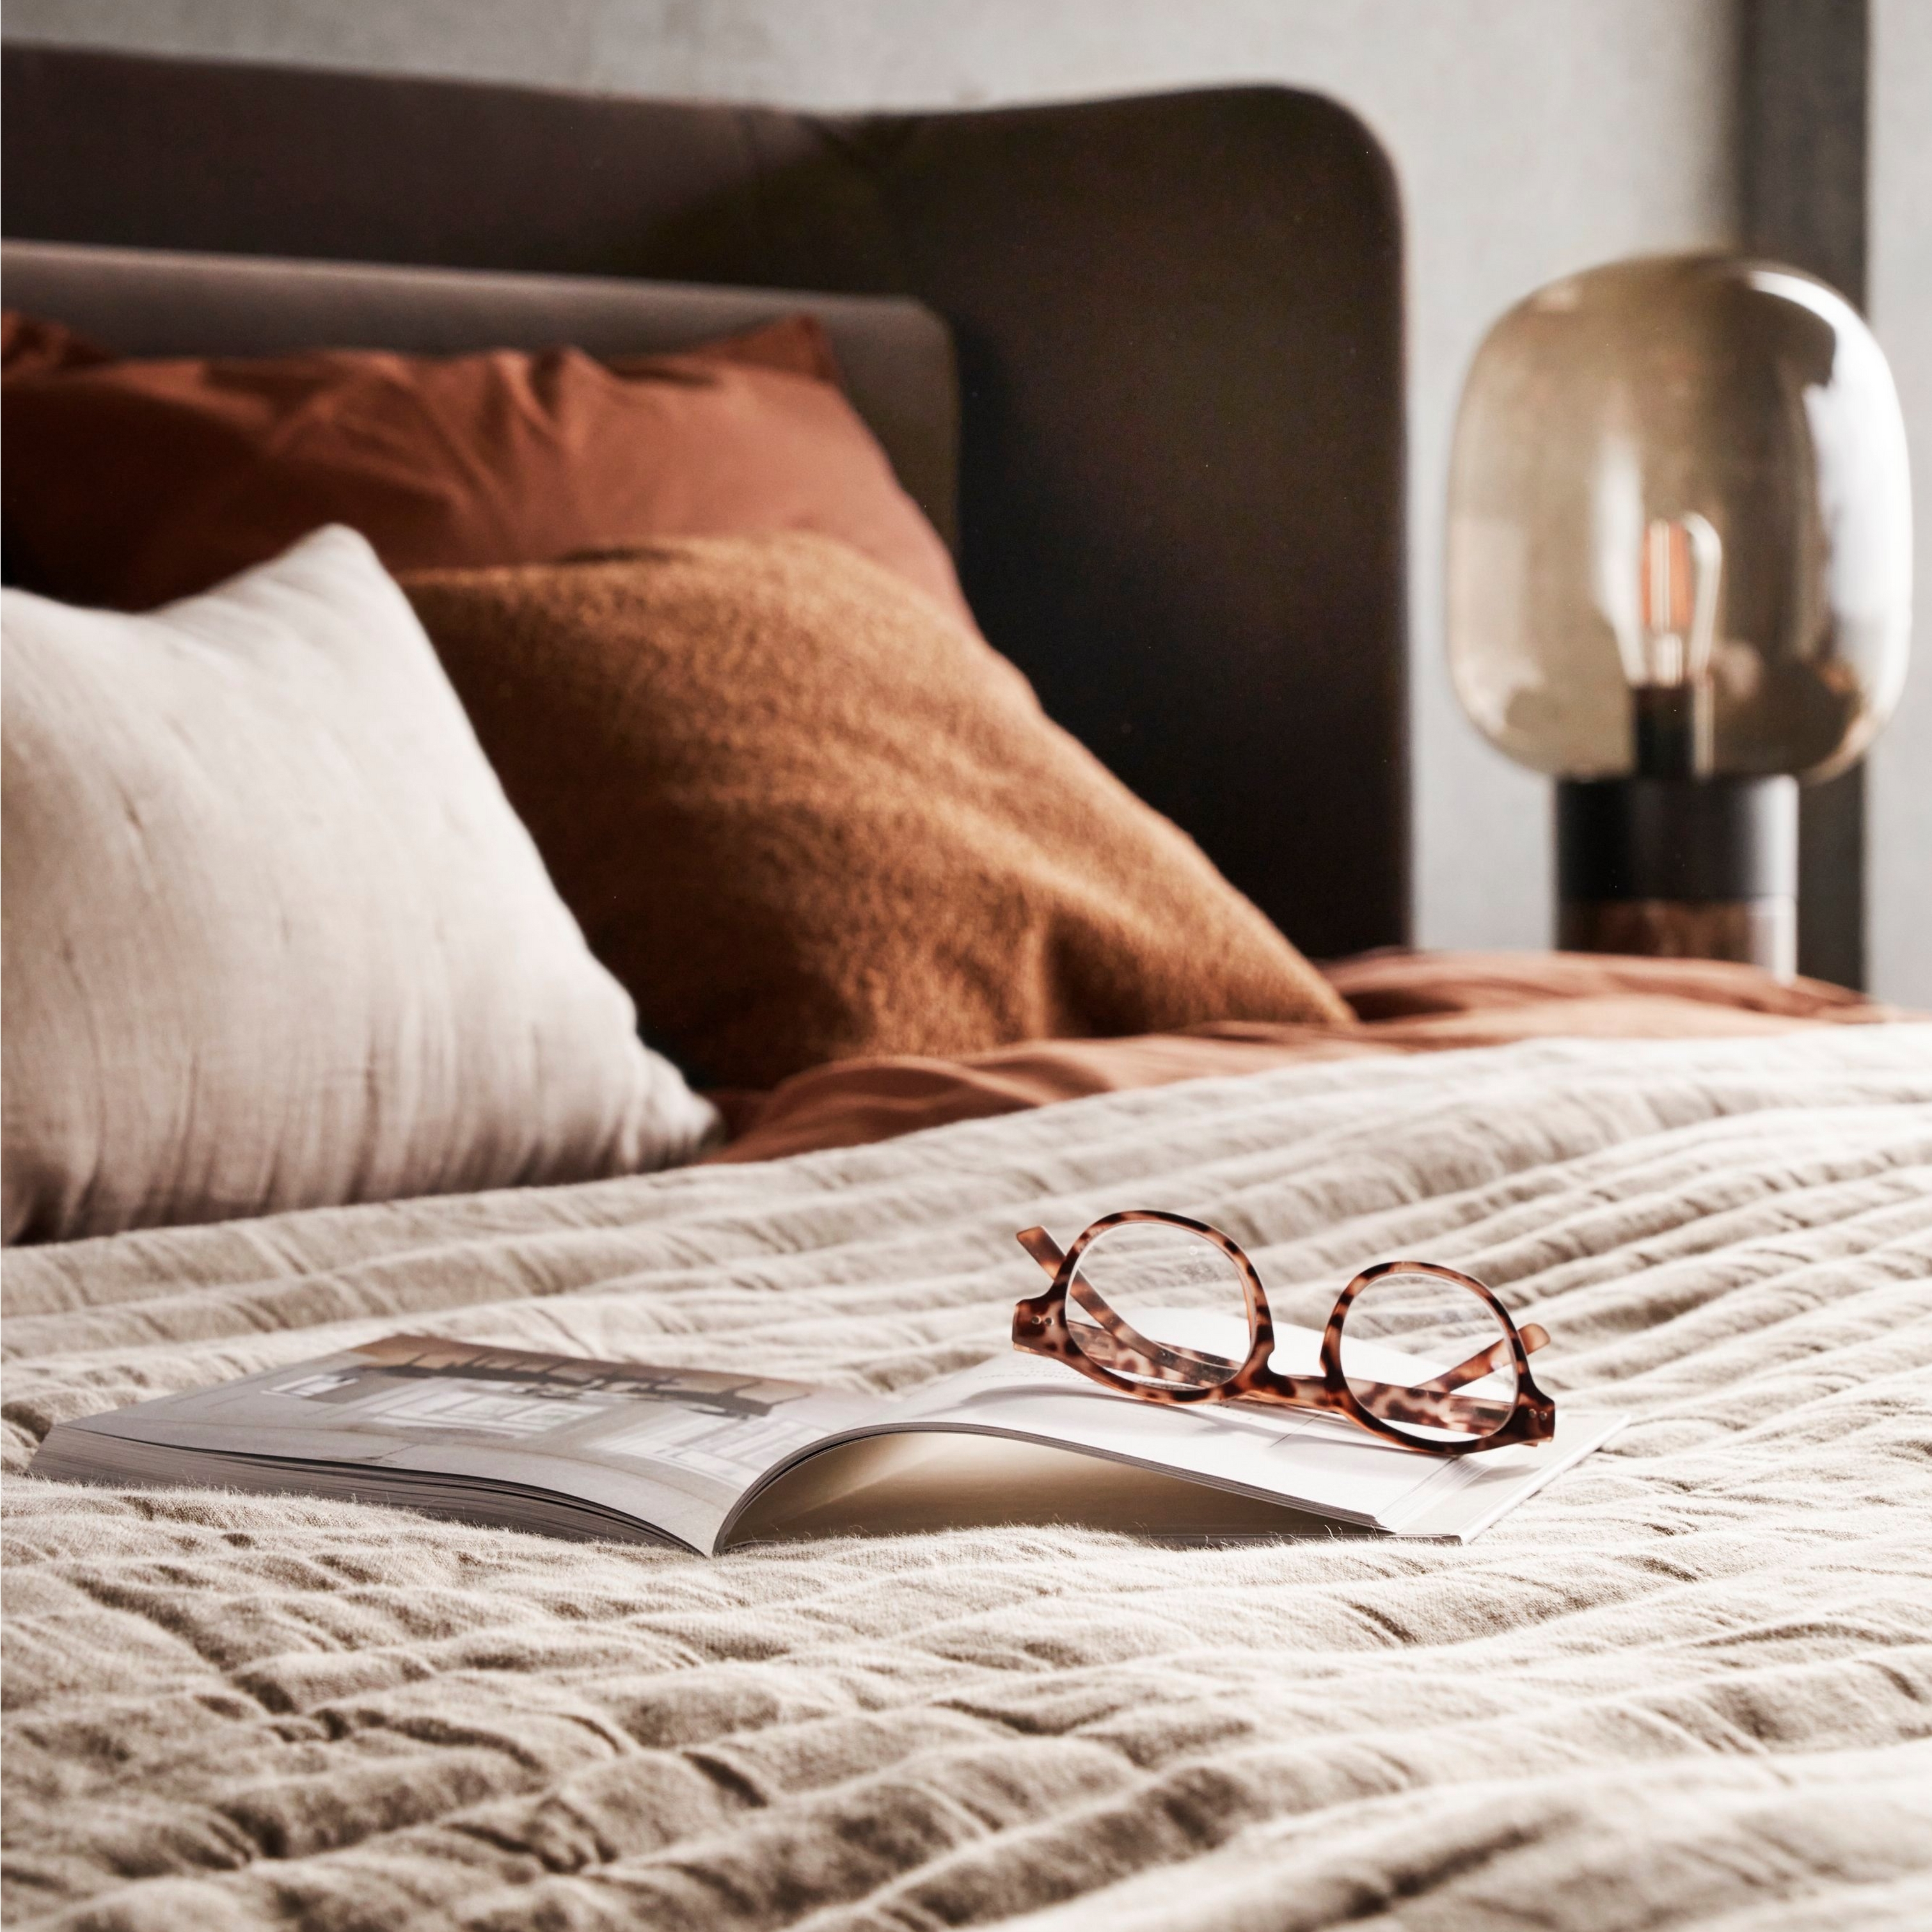 Cama com roupa de cama texturizada, óculos pousados num livro aberto e iluminação suave na mesa de cabeceira.